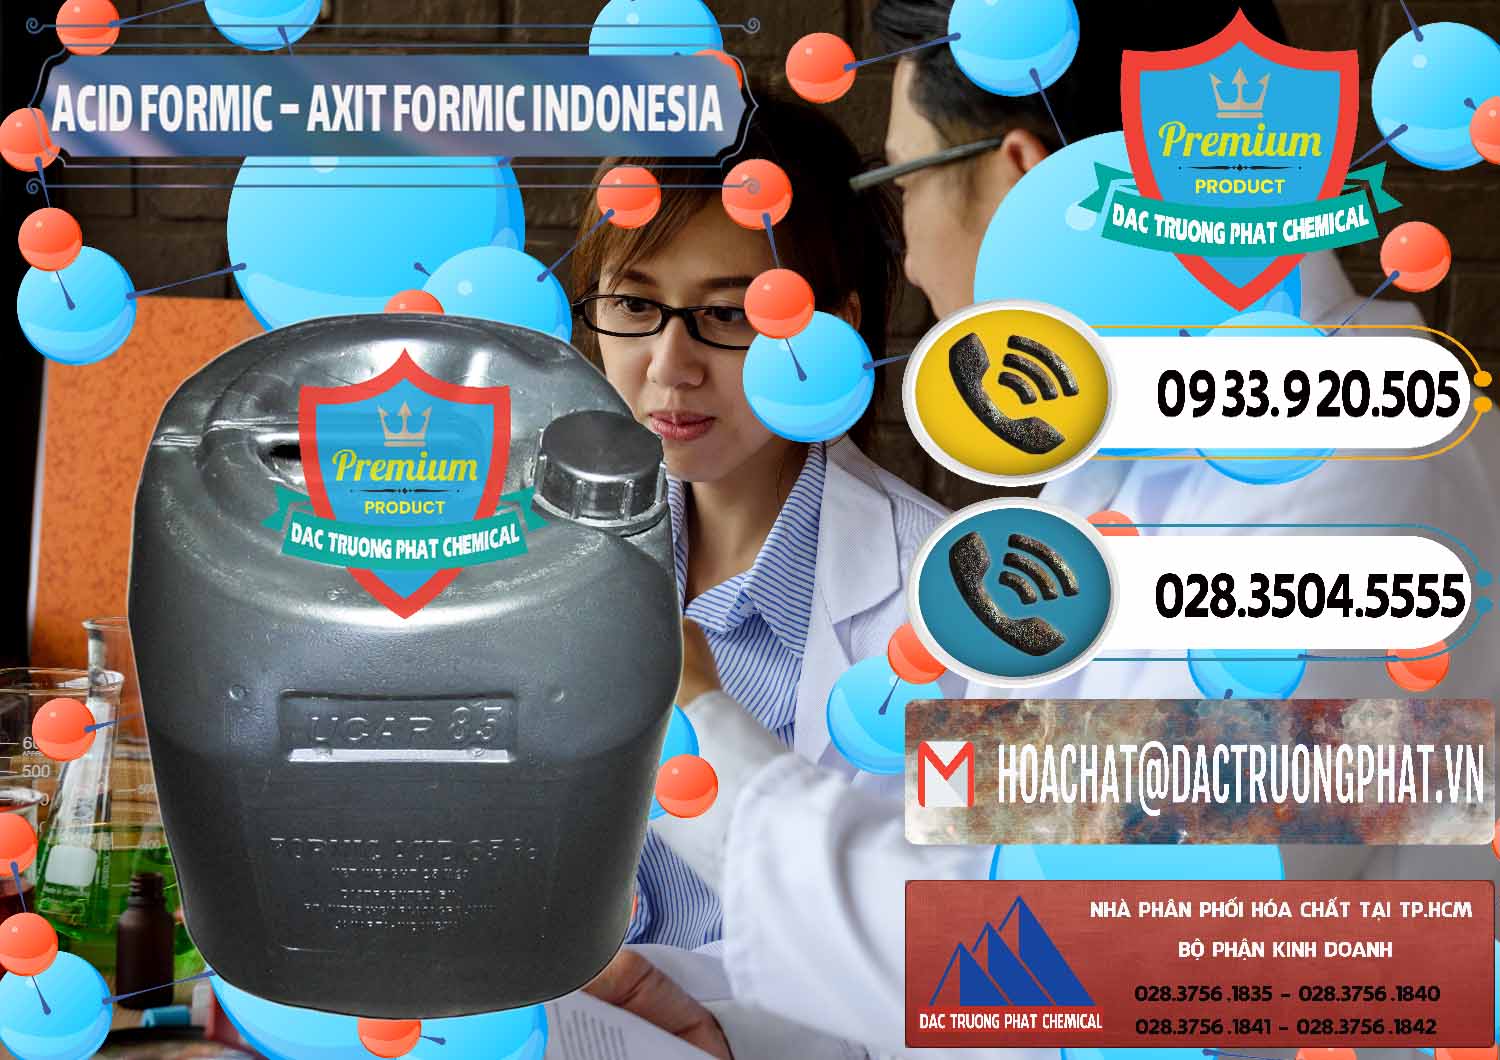 Công ty chuyên phân phối ( bán ) Acid Formic - Axit Formic Indonesia - 0026 - Công ty chuyên phân phối _ nhập khẩu hóa chất tại TP.HCM - hoachatdetnhuom.vn